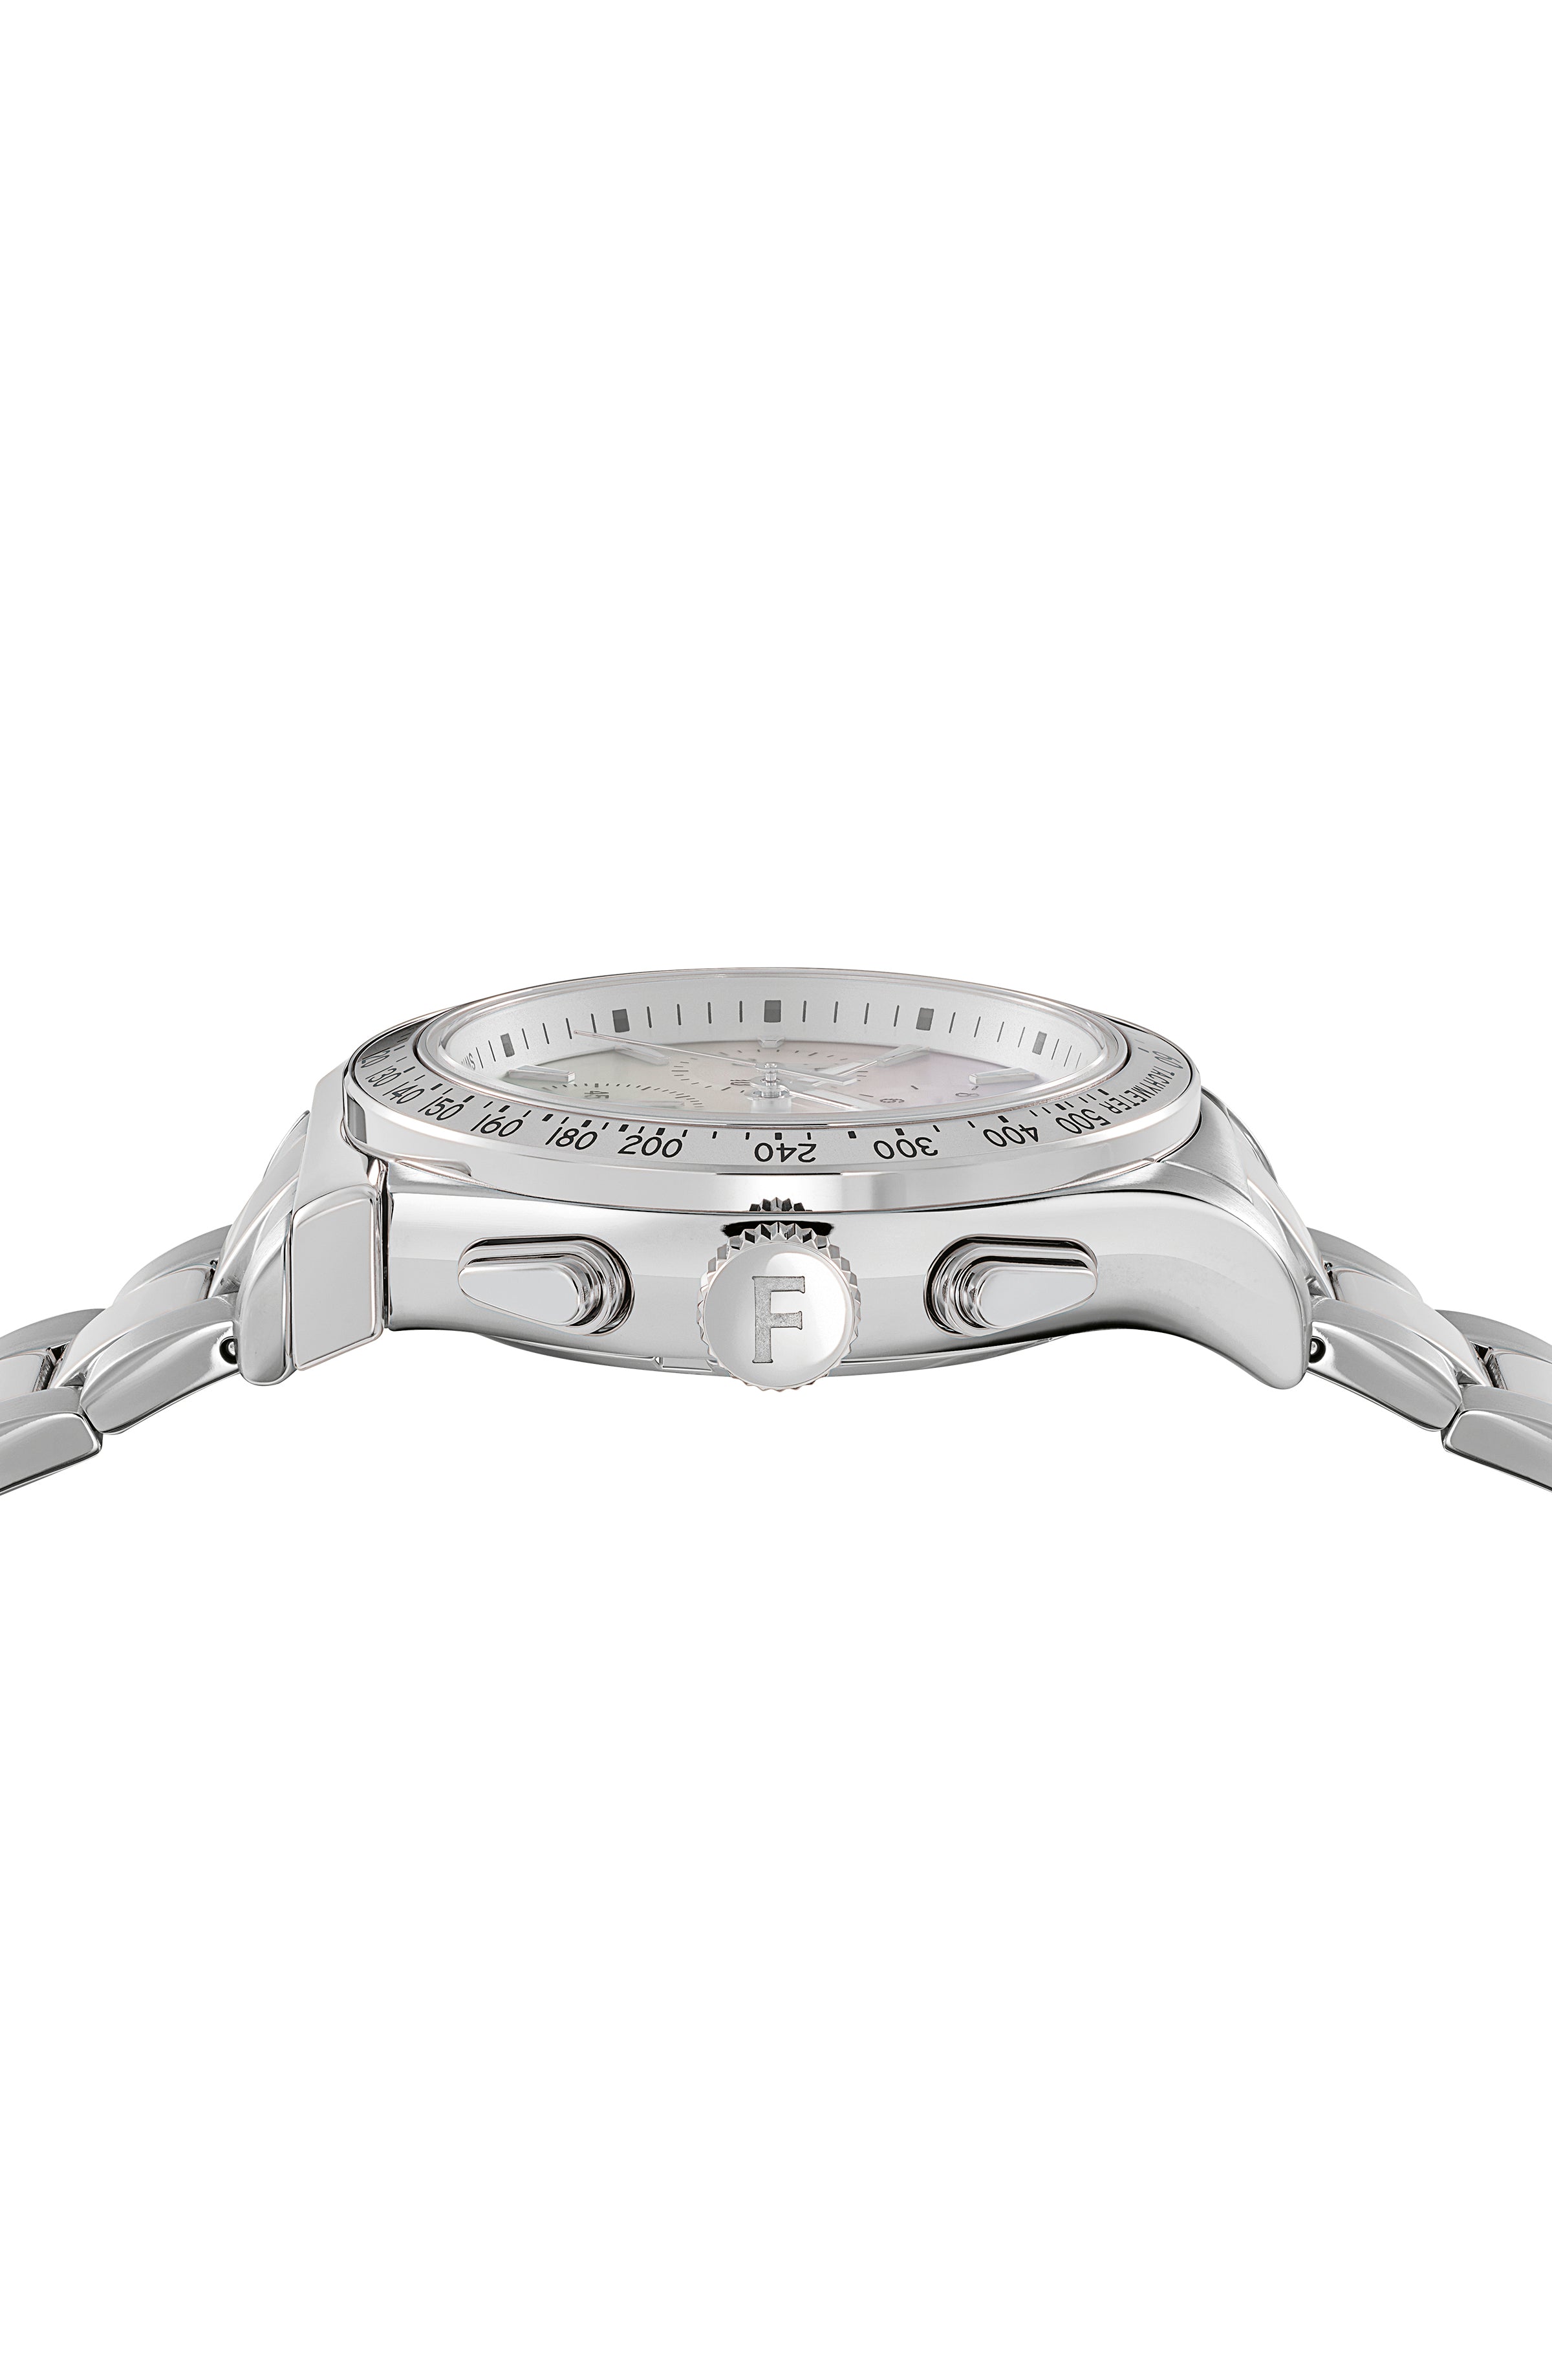 Ferragamo 1927 Chrono Bracelet Watch